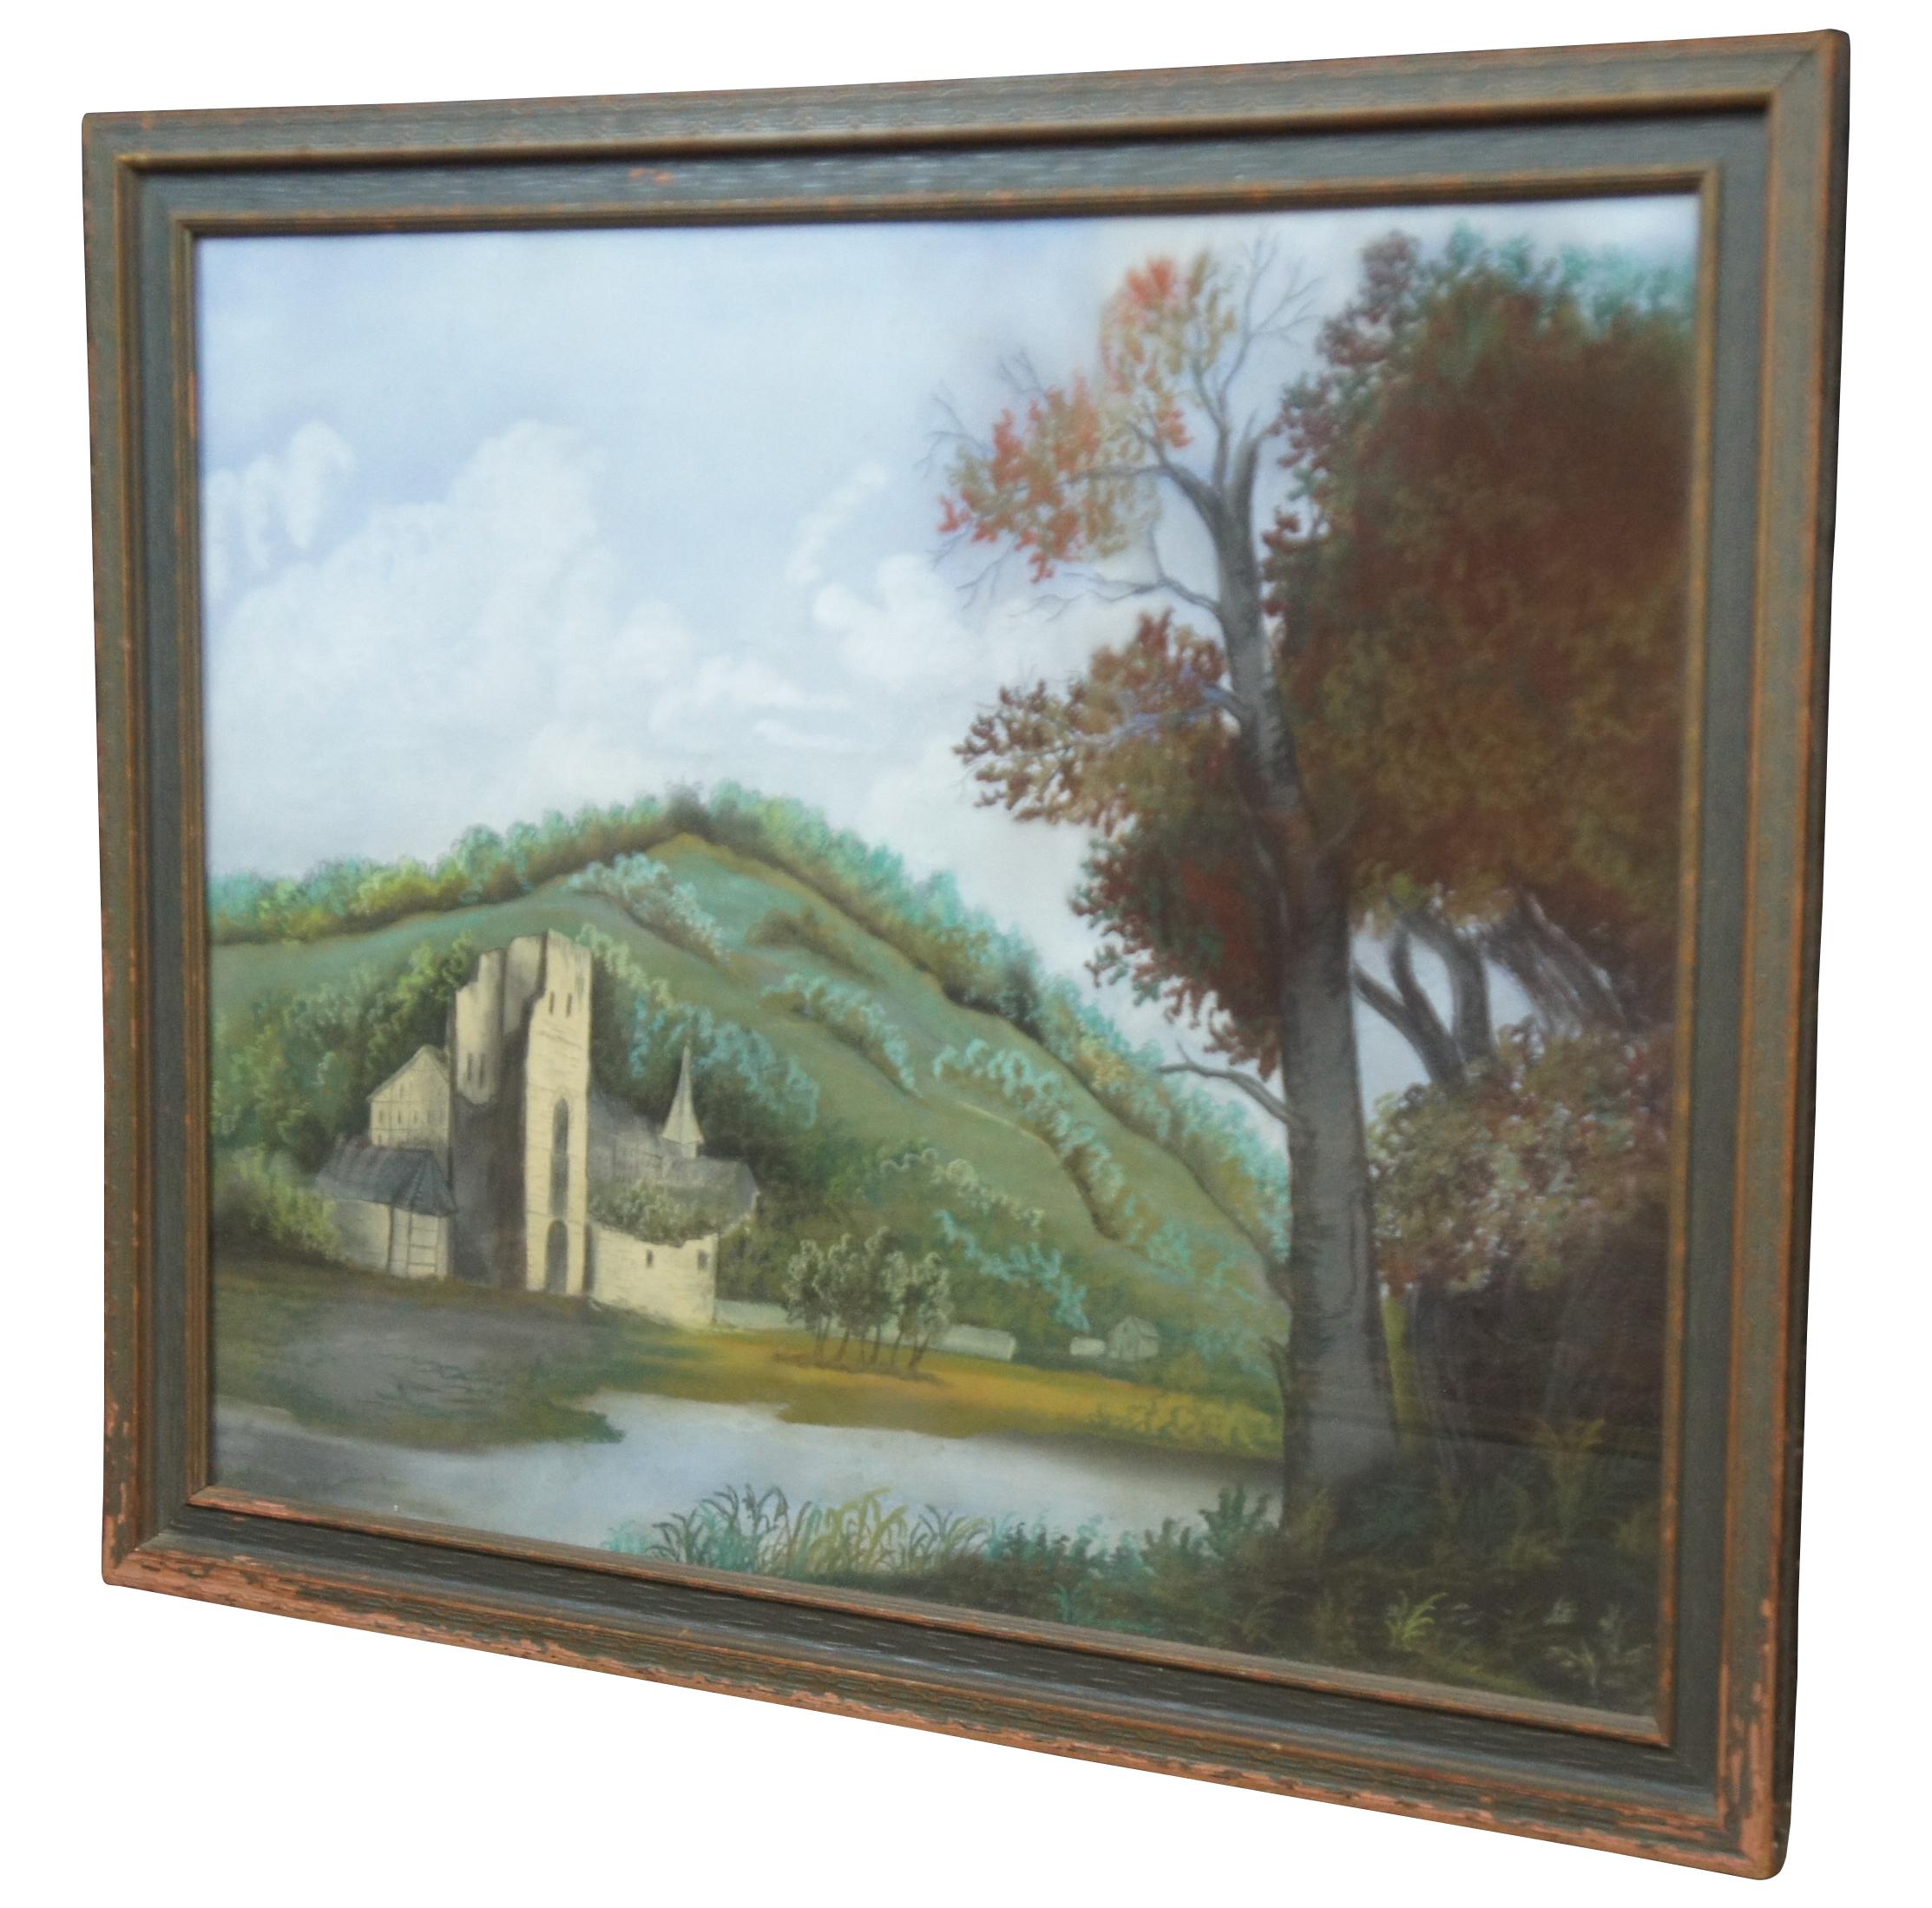 Peinture allemande au pastel, encadrée, datant du milieu du siècle dernier, représentant un paysage vallonné près d'une rivière, centré sur un château en pierre et une ferme. Acheté dans les années 50 à Francfort.

Mesures : 32